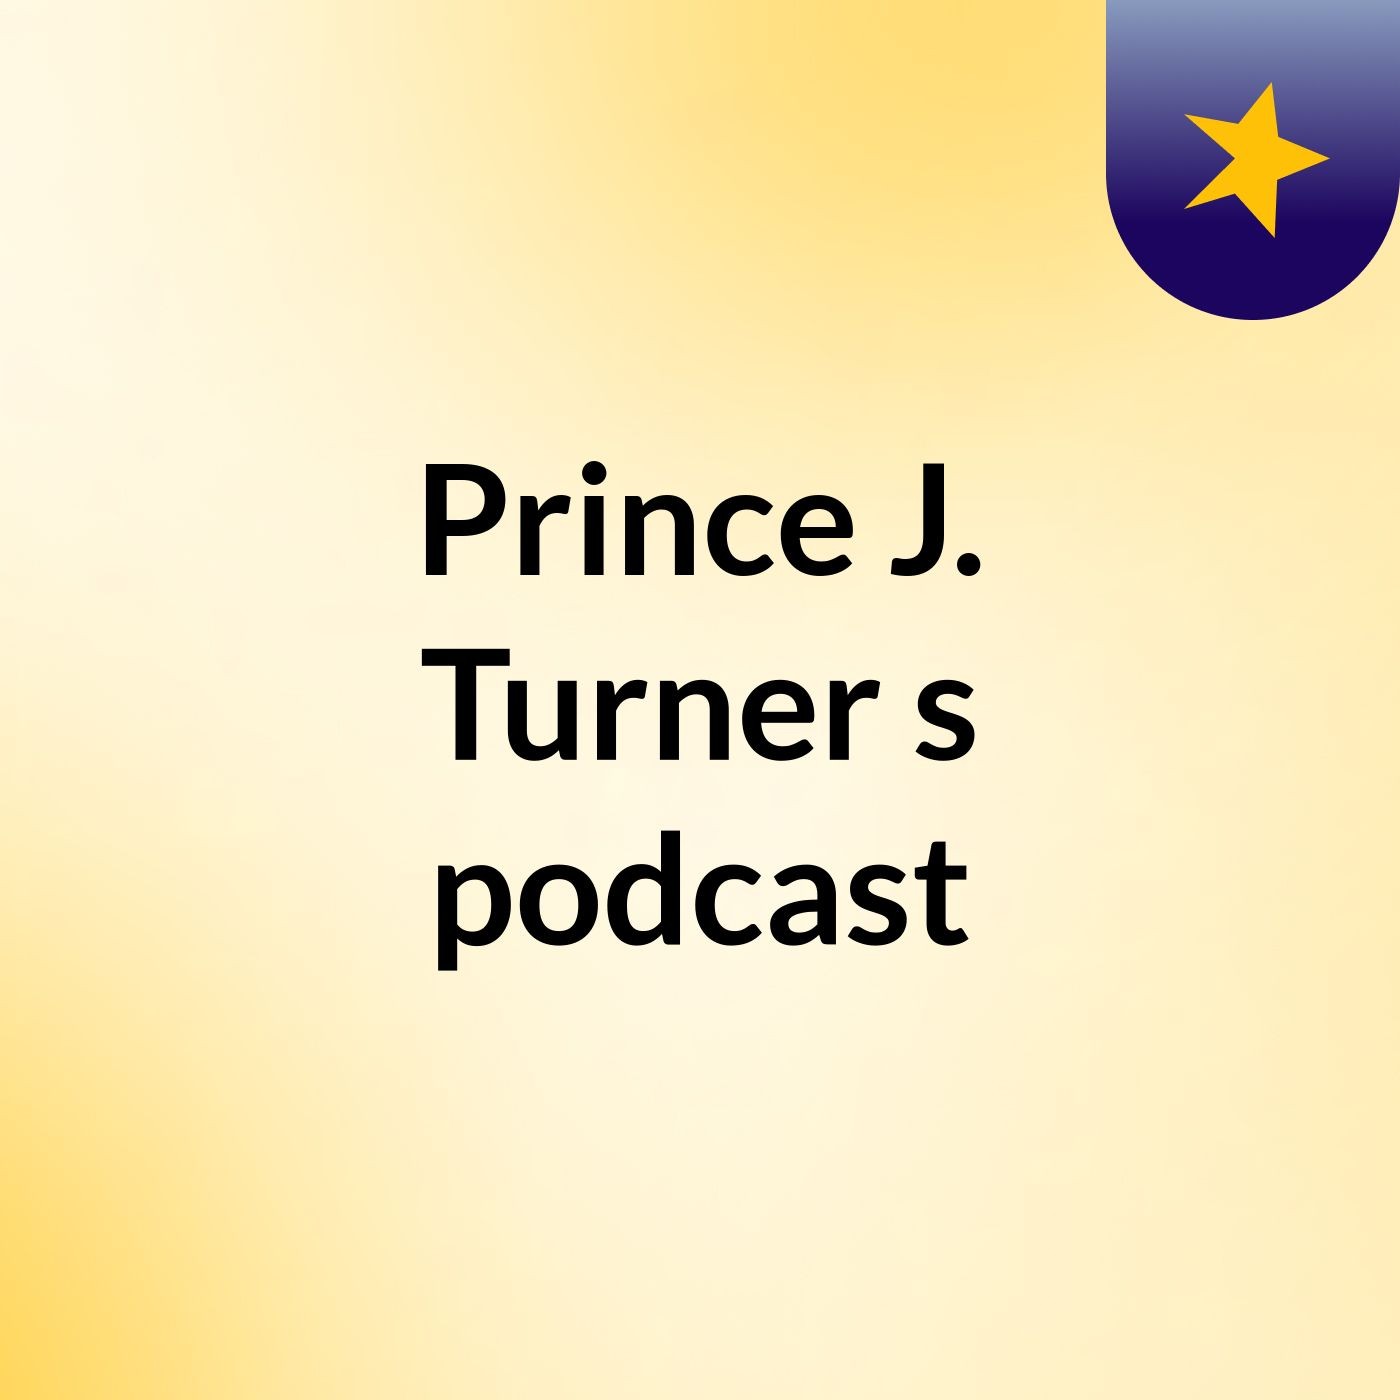 Episode 3 - Prince J. Turner's podcast